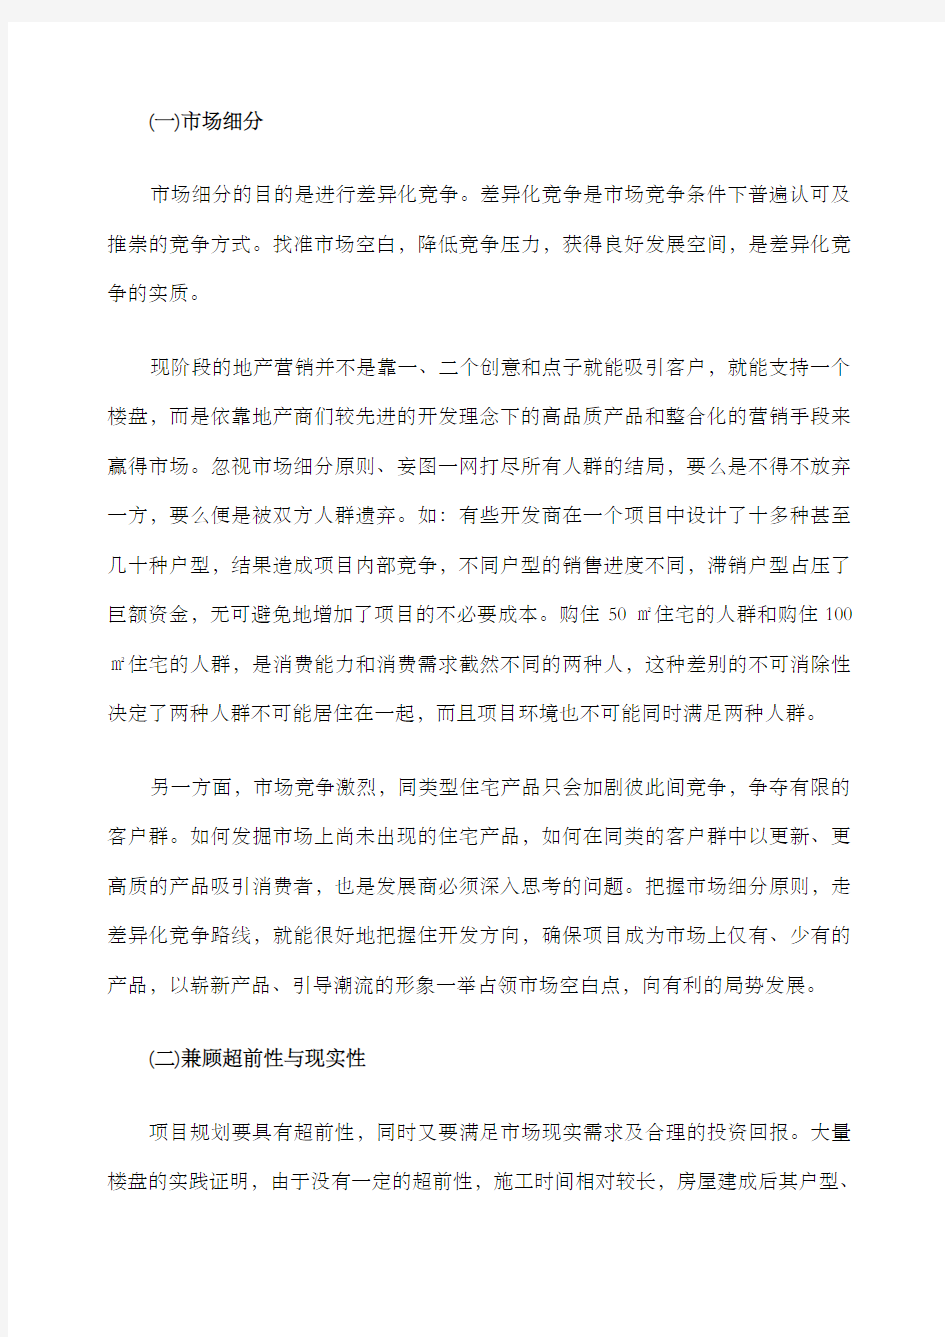 深圳地块项目定位报告